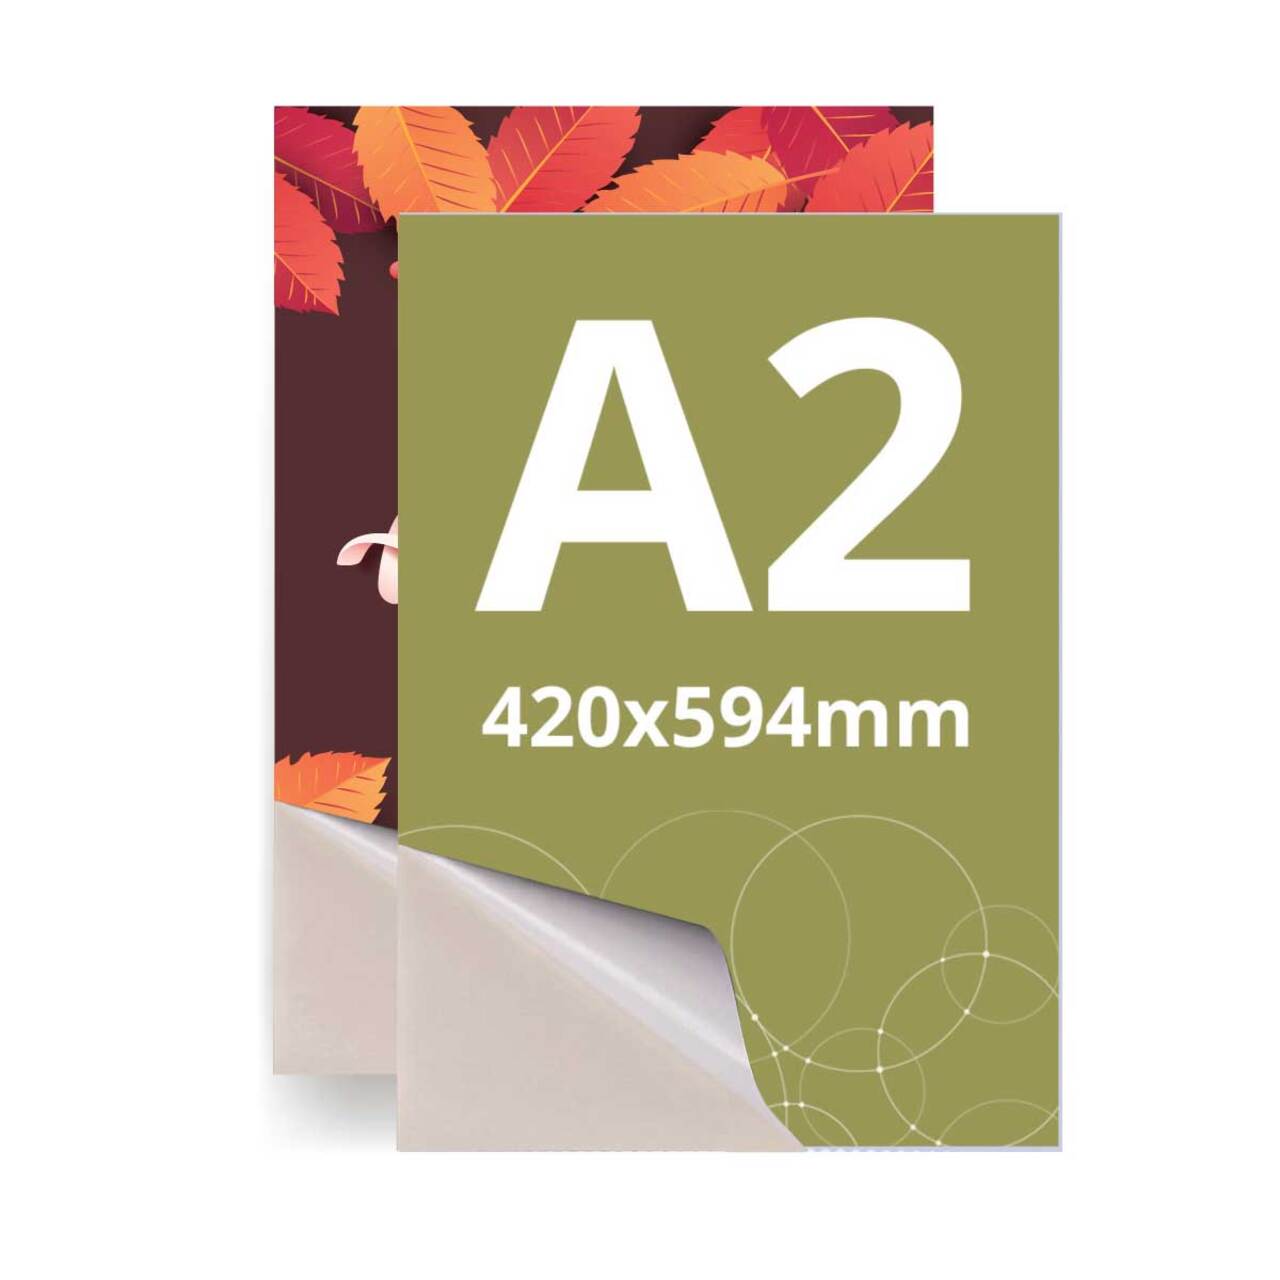 PRINT Autocolant laminat A2 (420x594mm), 2buc/pachet.